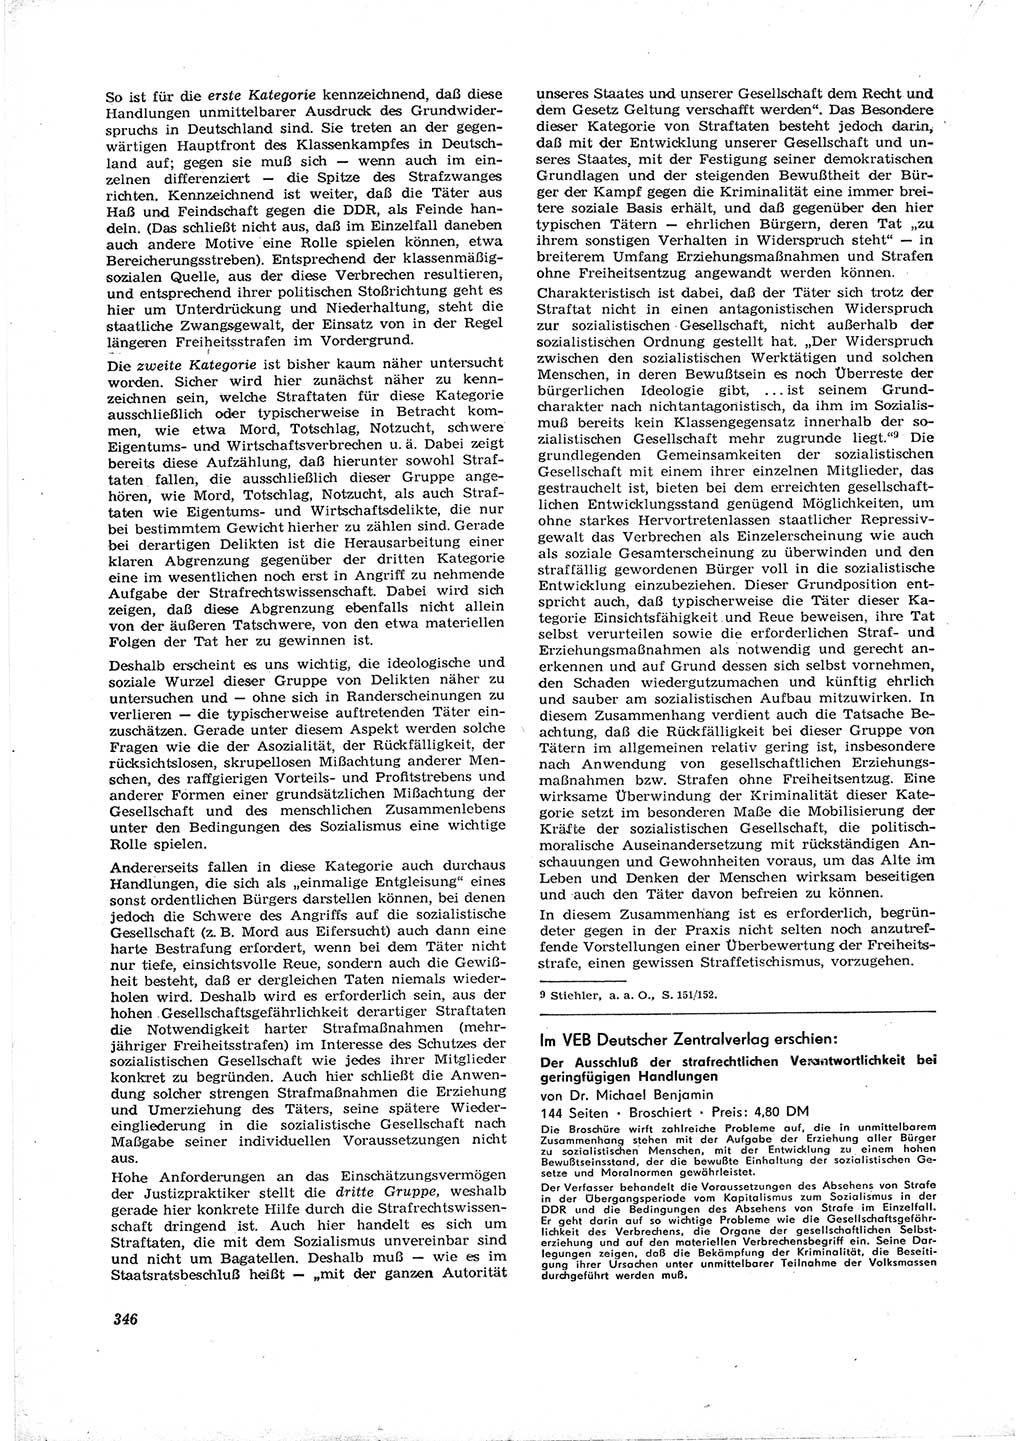 Neue Justiz (NJ), Zeitschrift für Recht und Rechtswissenschaft [Deutsche Demokratische Republik (DDR)], 16. Jahrgang 1962, Seite 346 (NJ DDR 1962, S. 346)